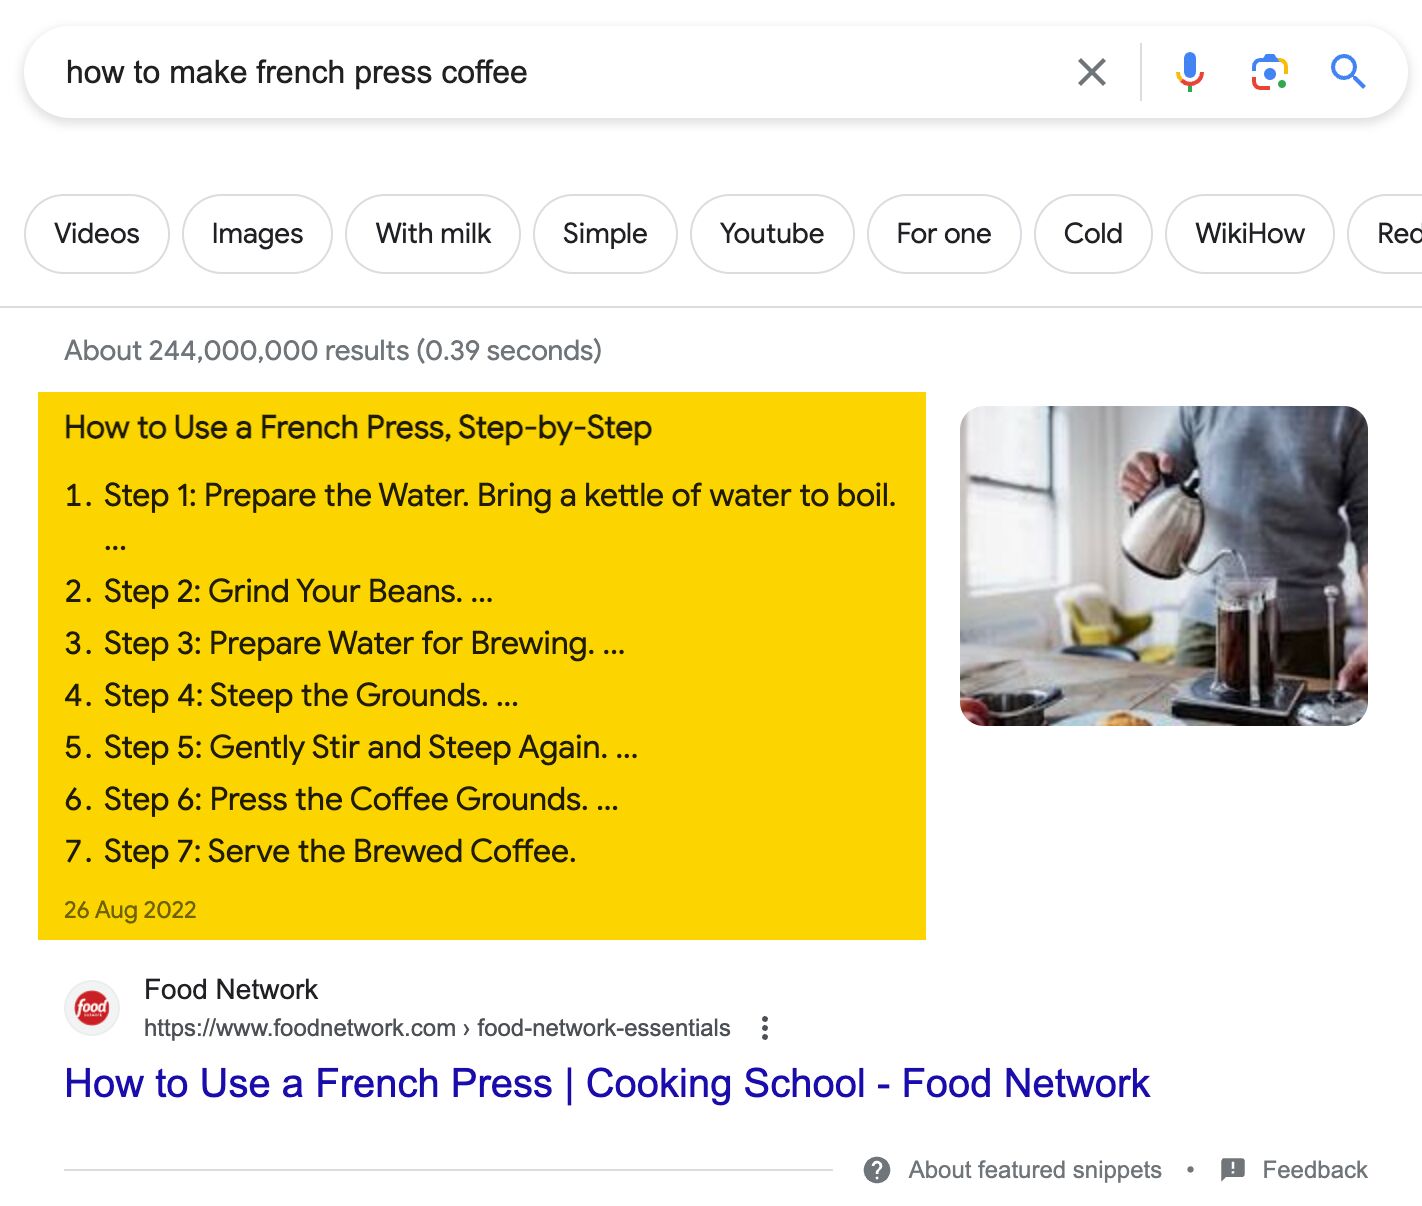 Het uitgelichte fragment voor 'Hoe maak je koffie uit de Franse pers' laat zien dat zoekers willen dat de gids stap voor stap is